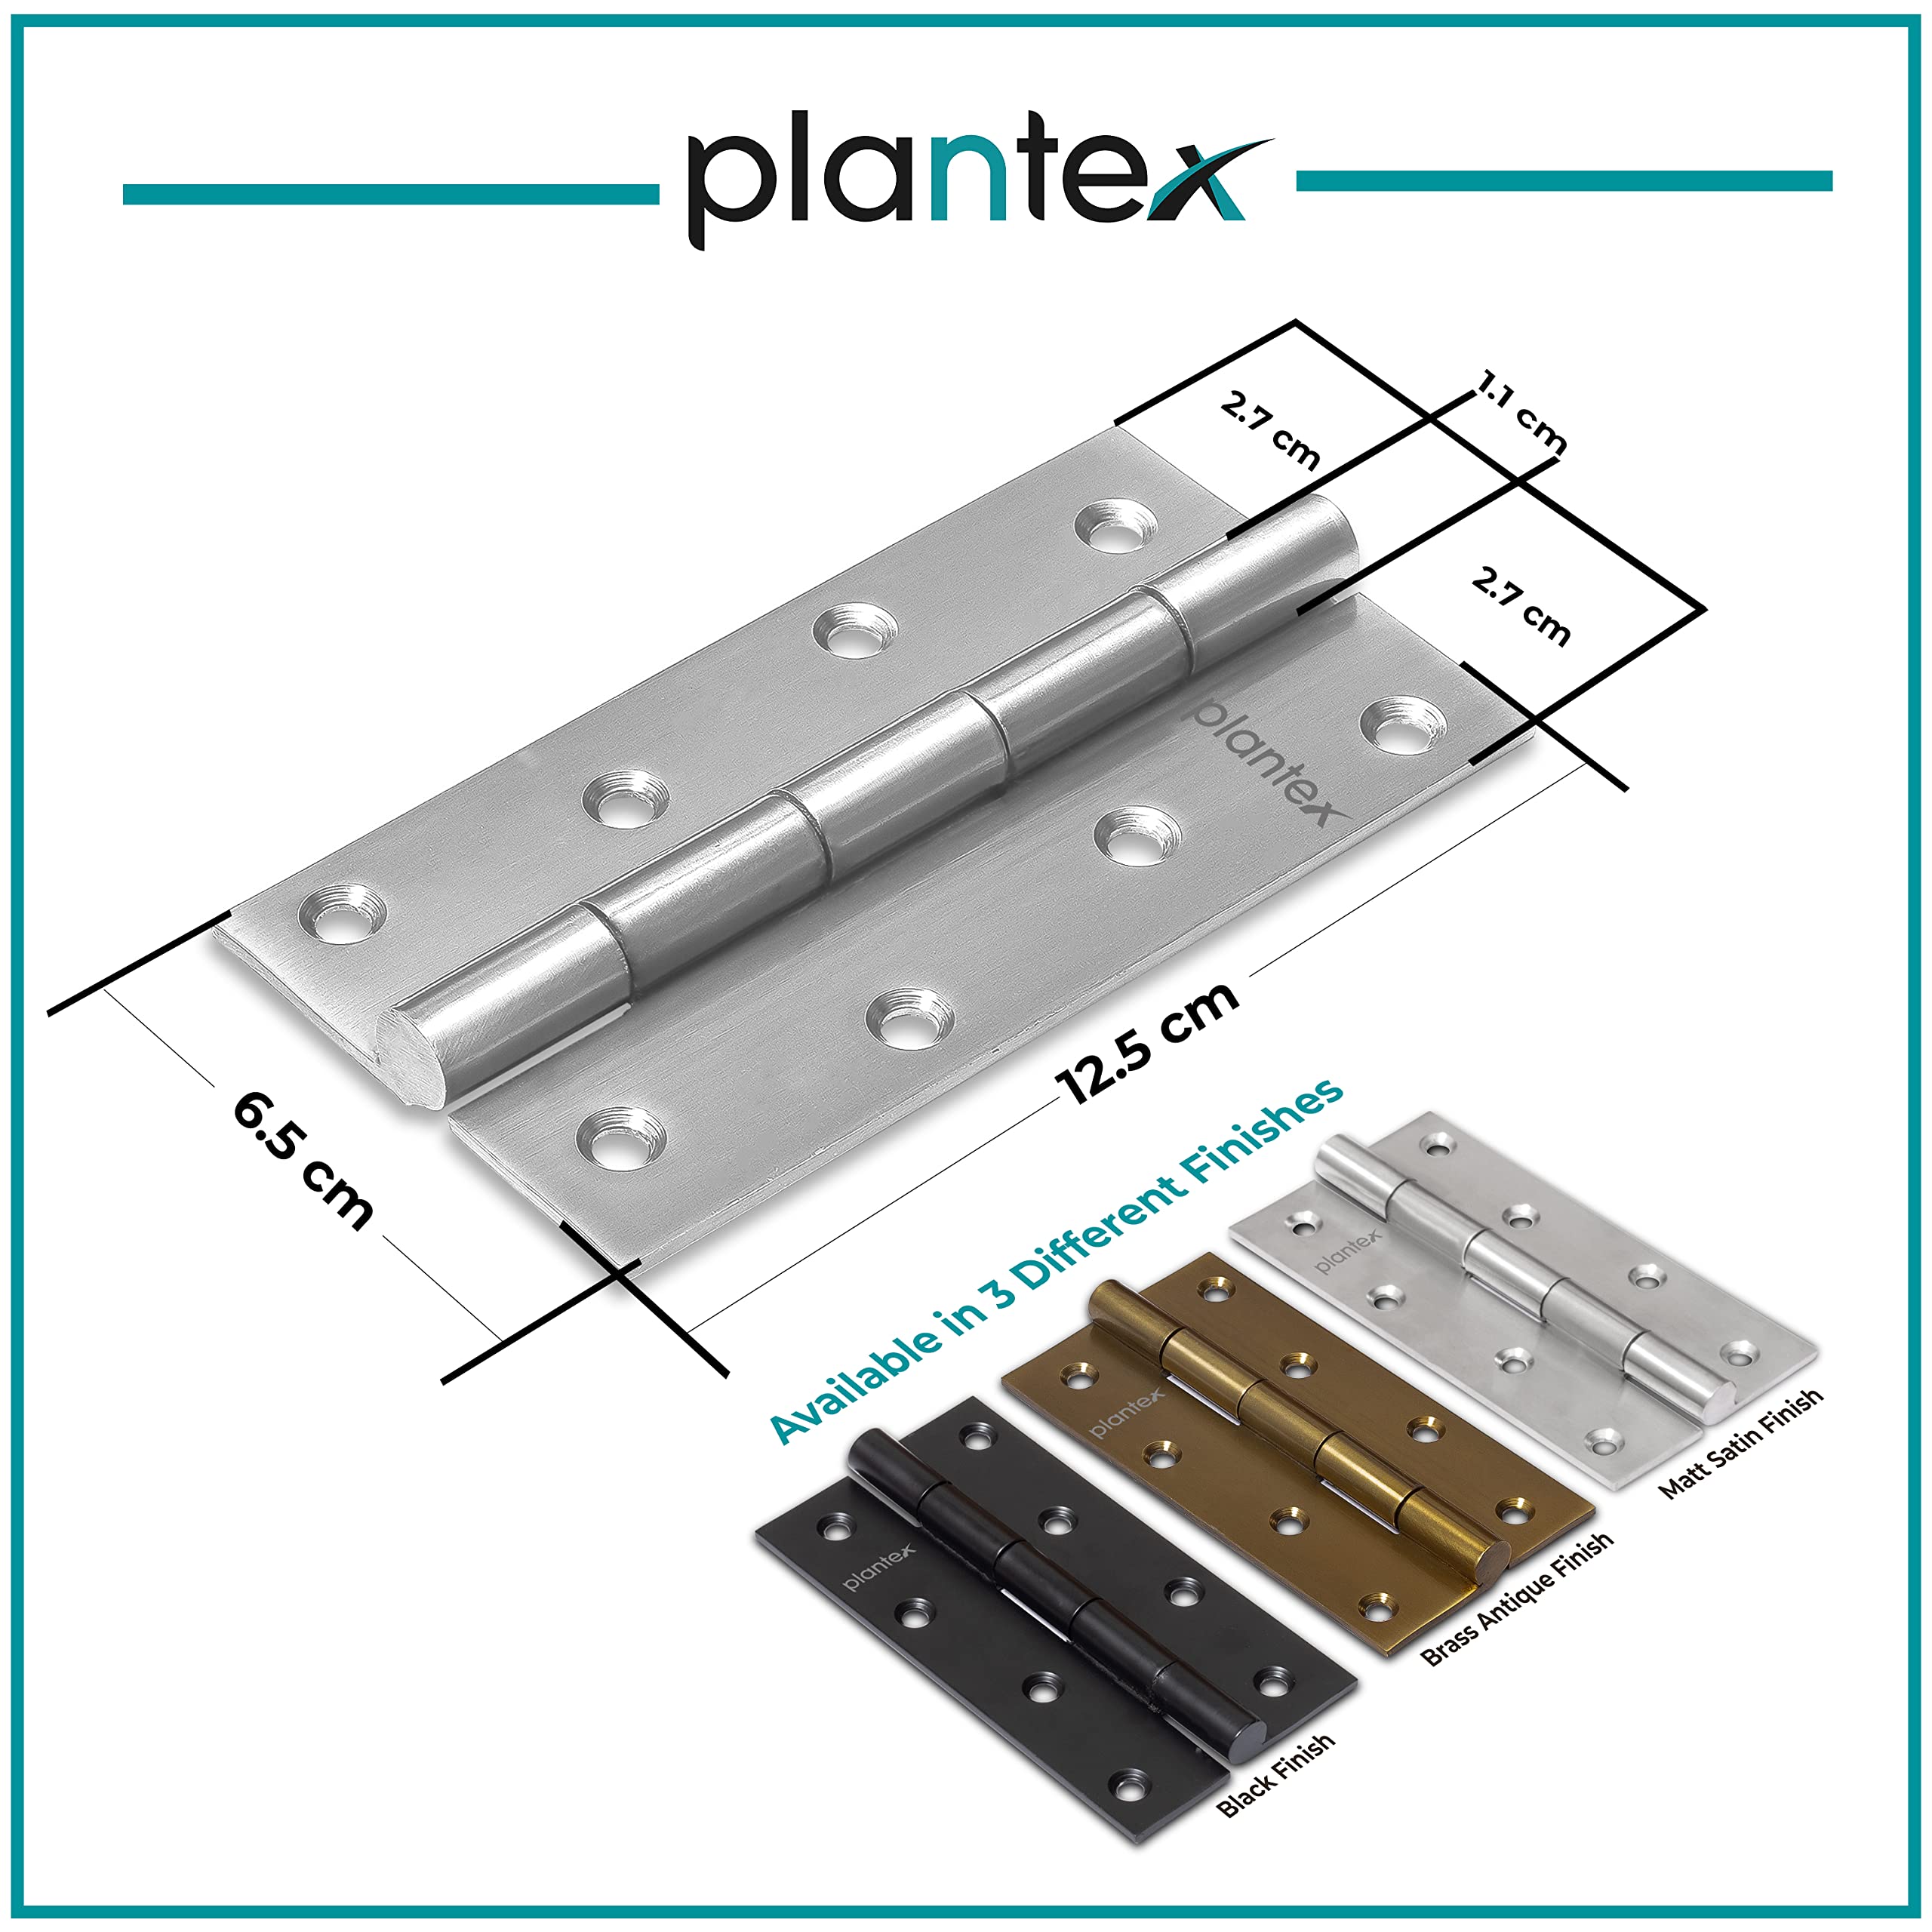 Plantex Heavy Duty Stainless Steel Door Butt Hinges 5 inch x 12 Gauge/2.5 mm Thickness Home/Office/Hotel for Main Door/Bedroom/Kitchen/Bathroom - Pack of 6 (Satin Matt)